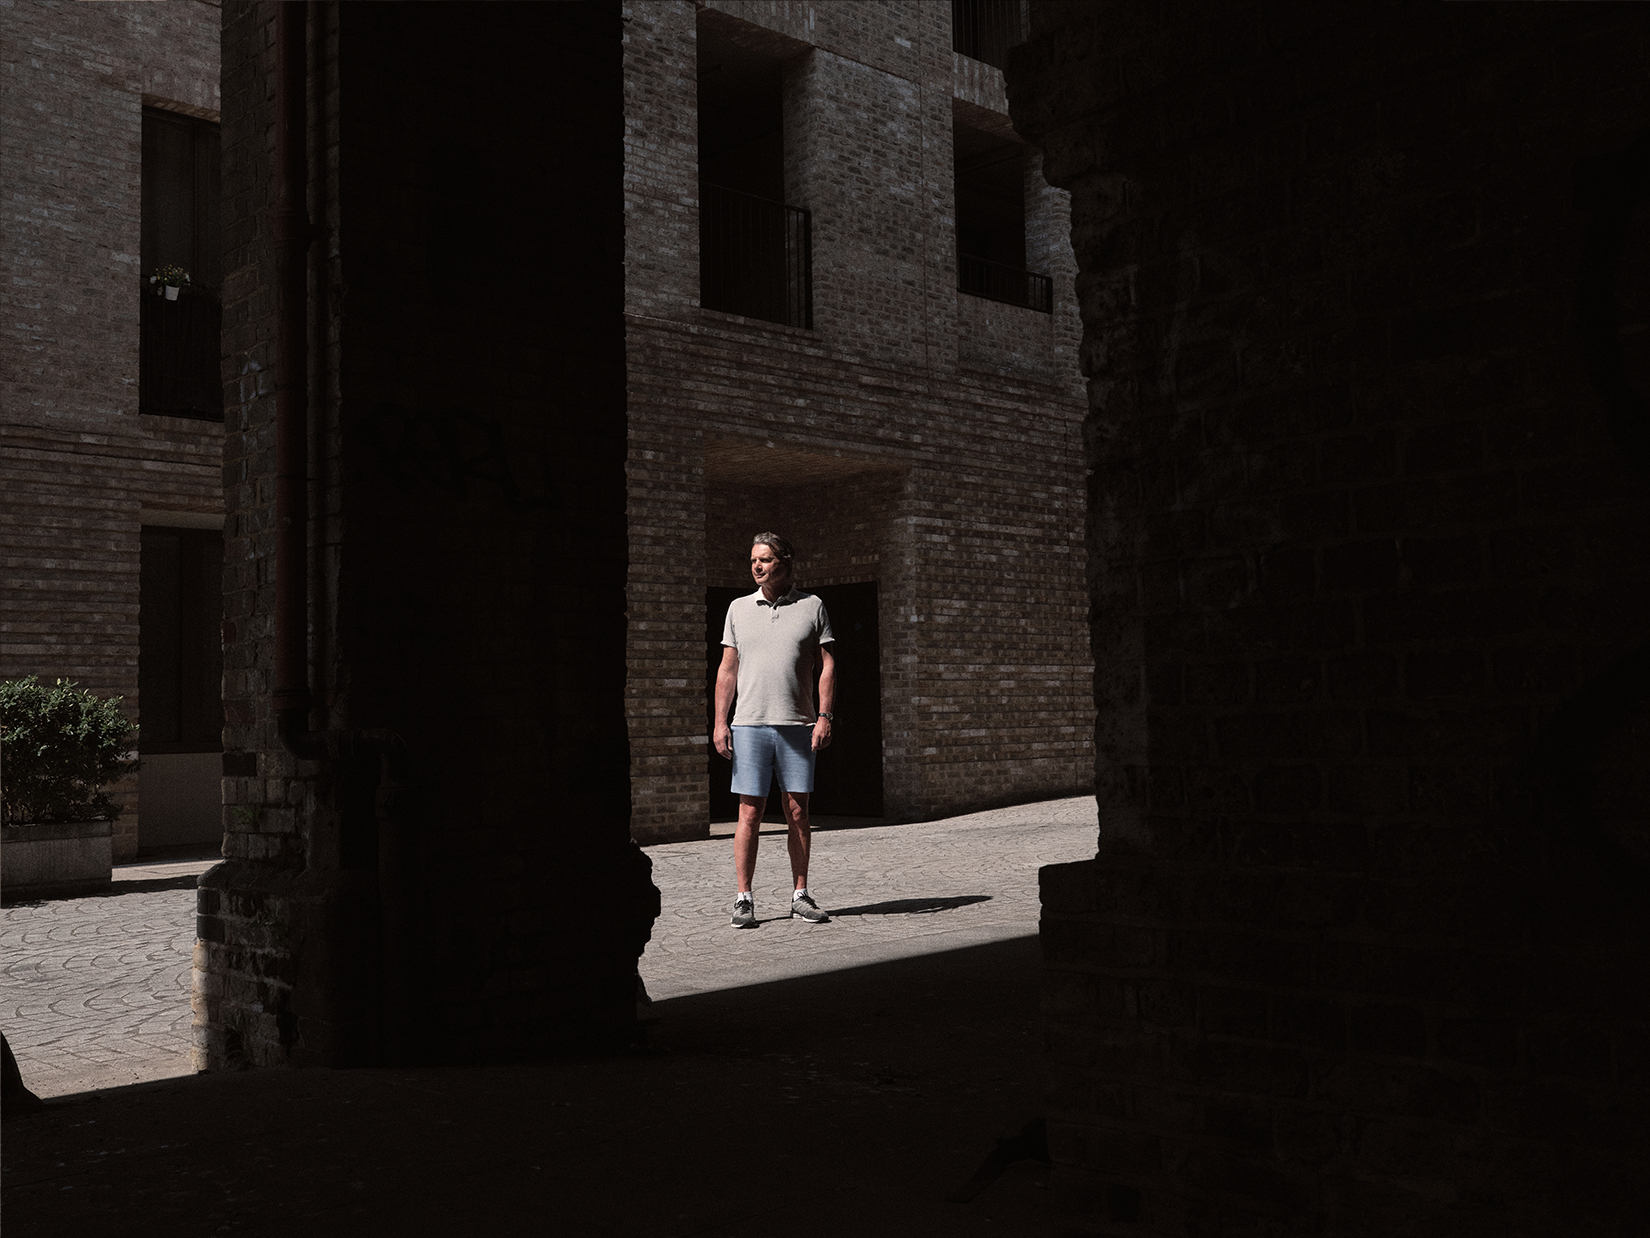 Ed standing outside housing estate framed by dark shadows